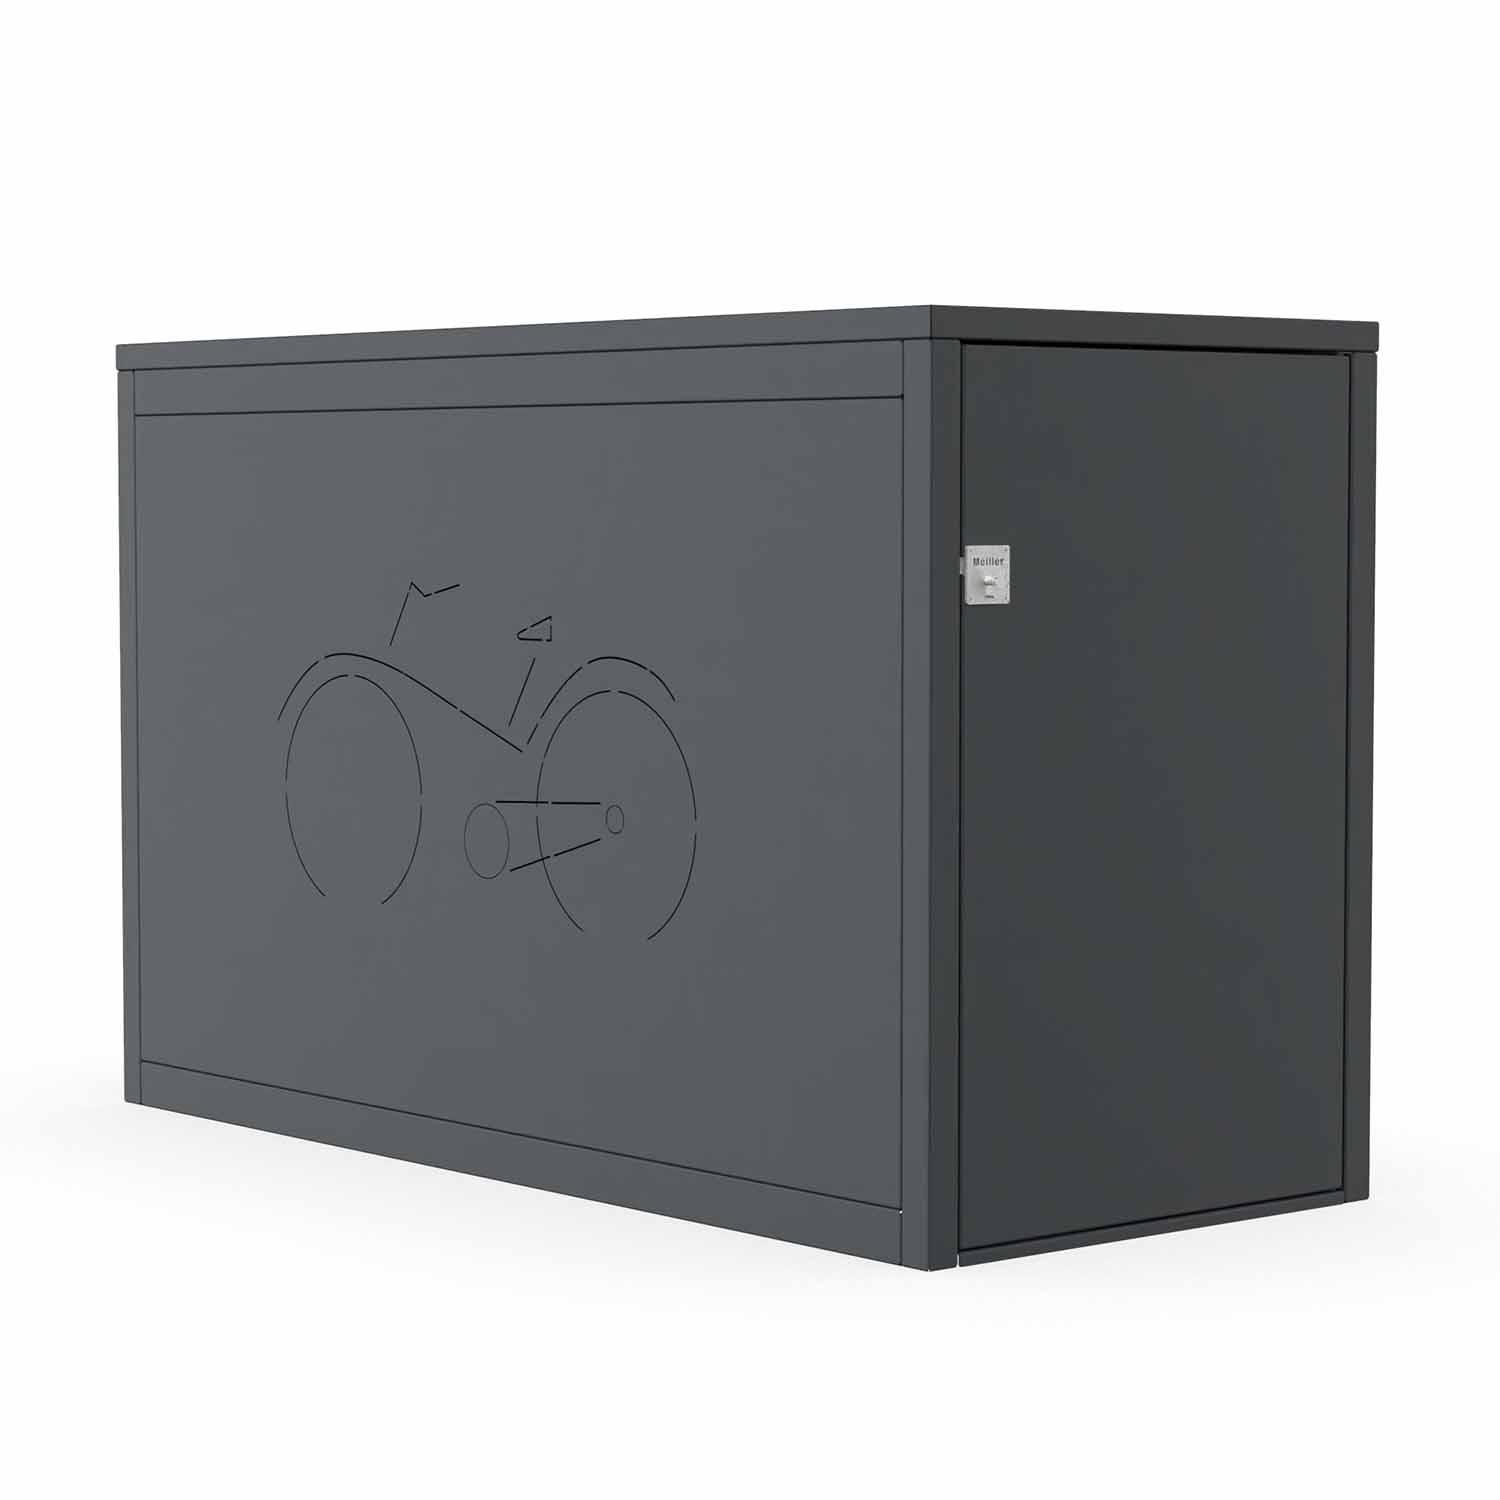 Fahrradbox mit Flachdach, 1 Stellplatz, ausziehbare Einlaufschiene, RAL 7016, Muster Fahrrad